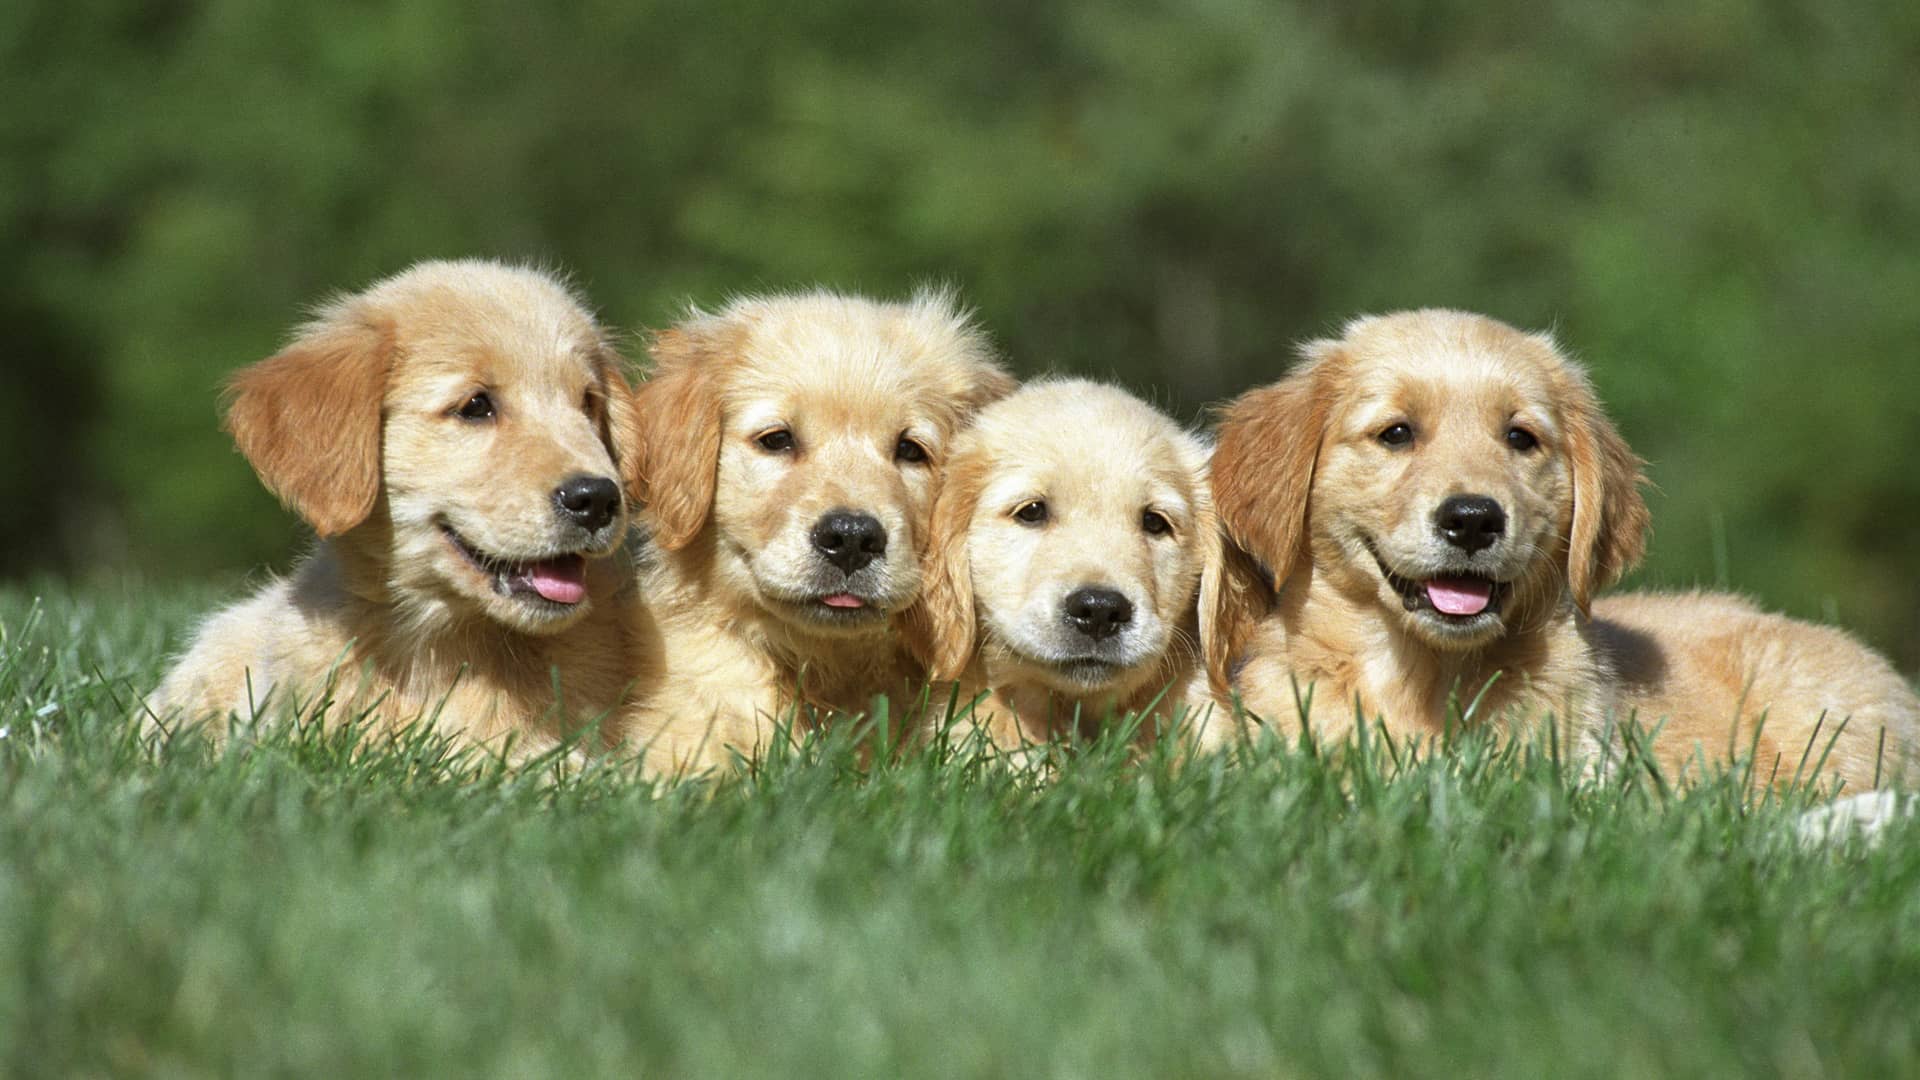 Cachorritos de golden retriever descansan en una pradera, asegurados gracias a un seguro para mascotas